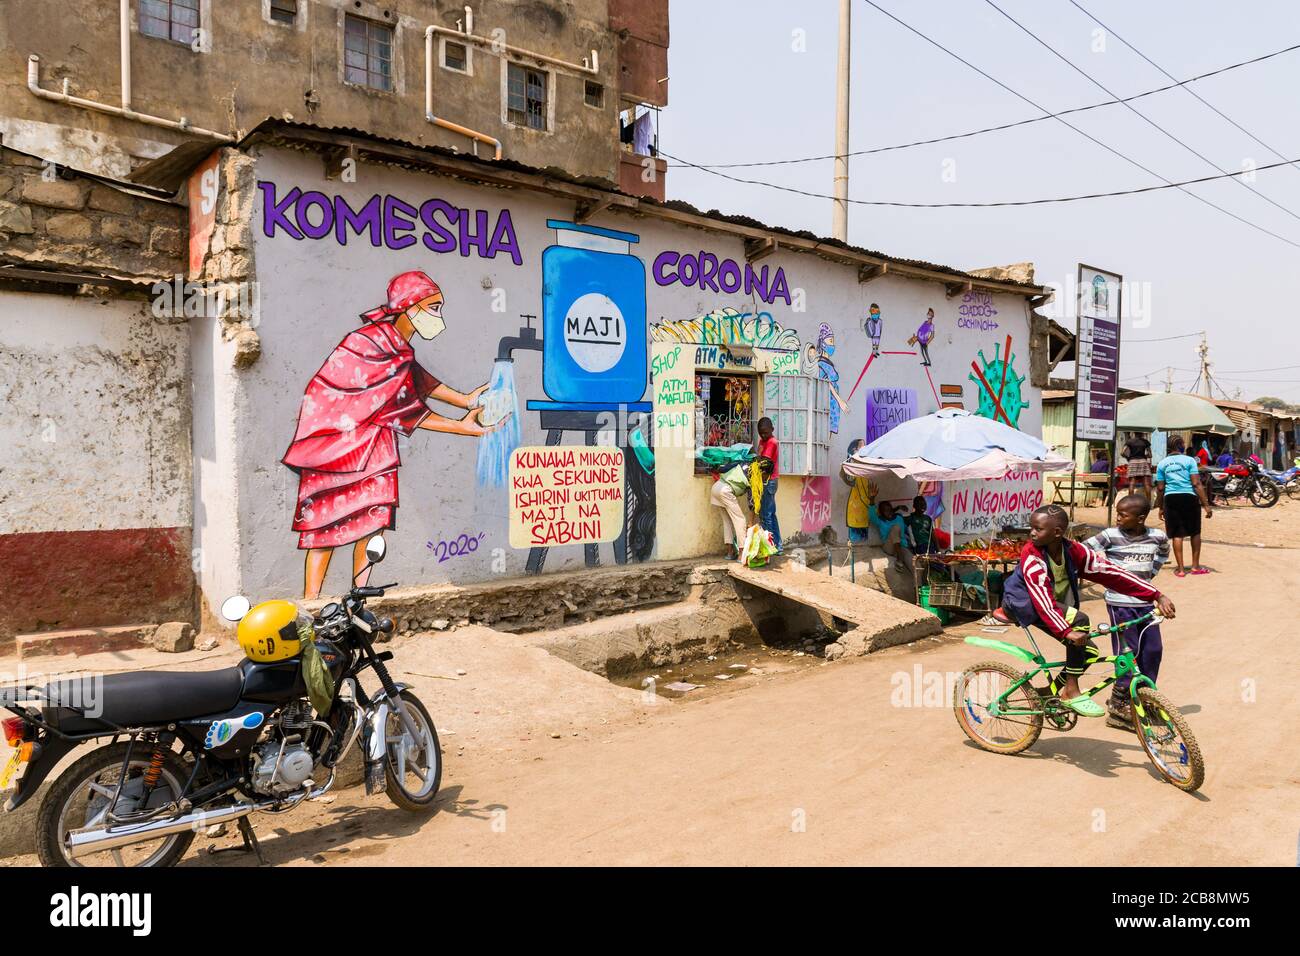 Un negozio di strada con un grande murale dipinto che dice Komesha Corona o Stop Corona e un'immagine di una donna che si lava le mani, Nairobi, Kenya Foto Stock